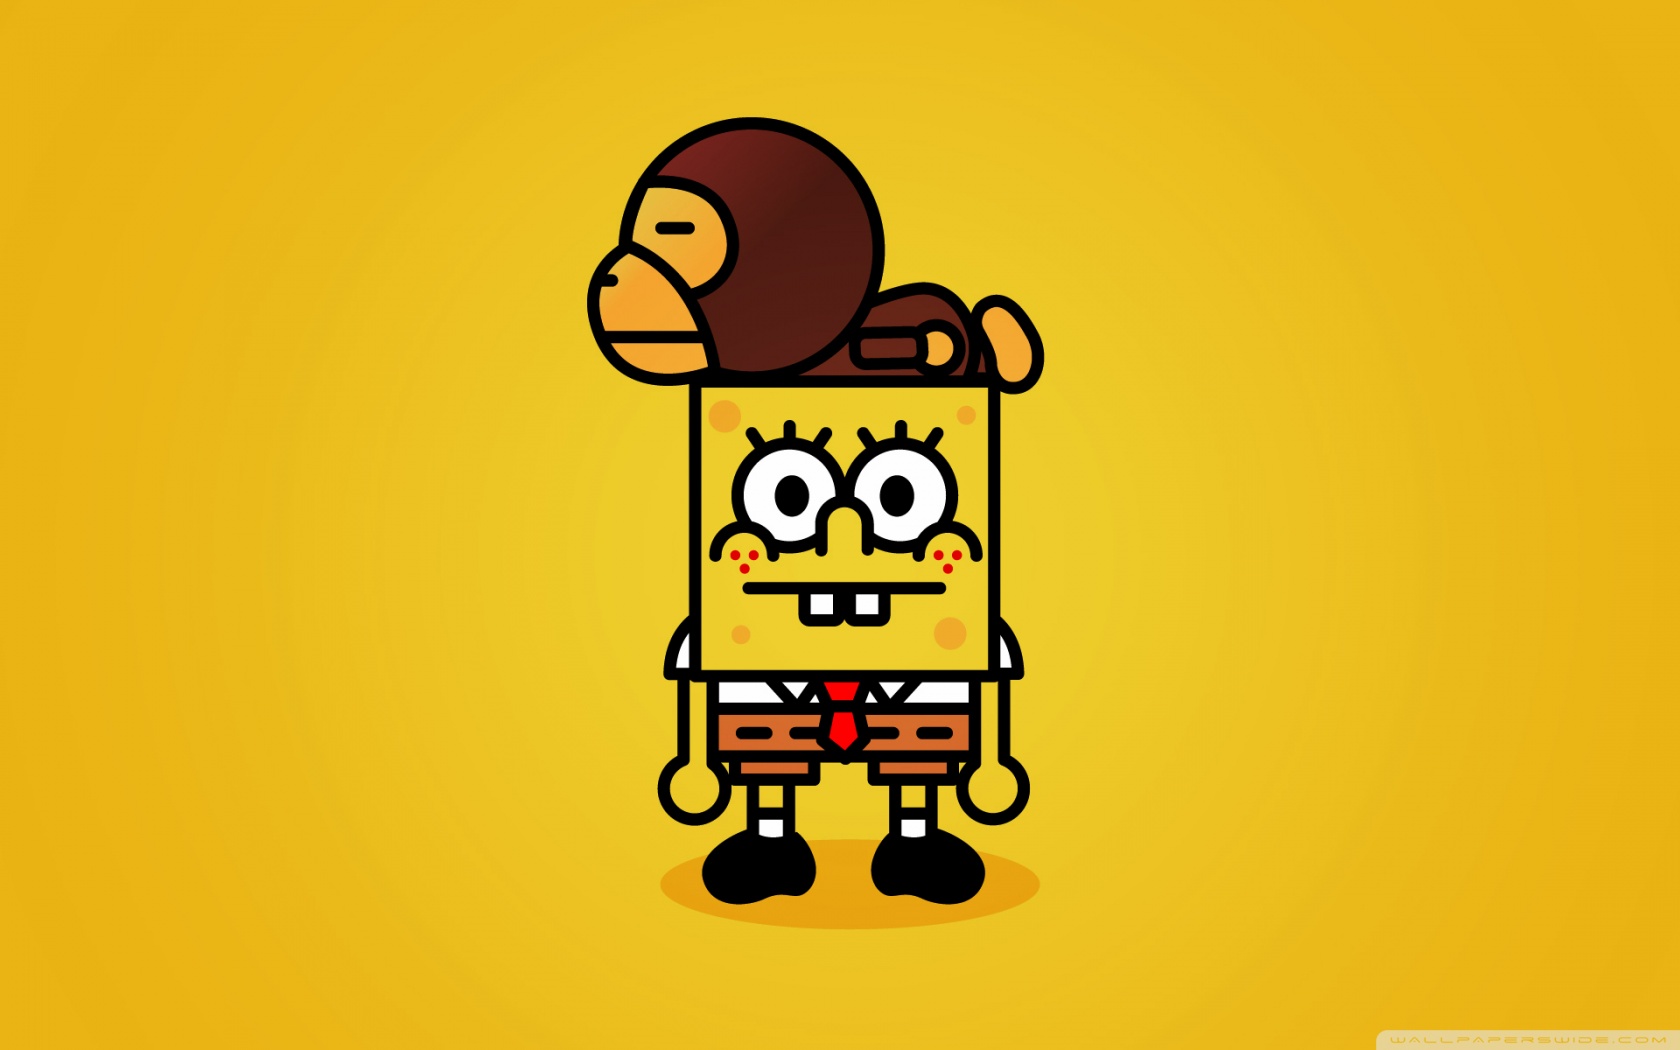 SpongeBob.jpg